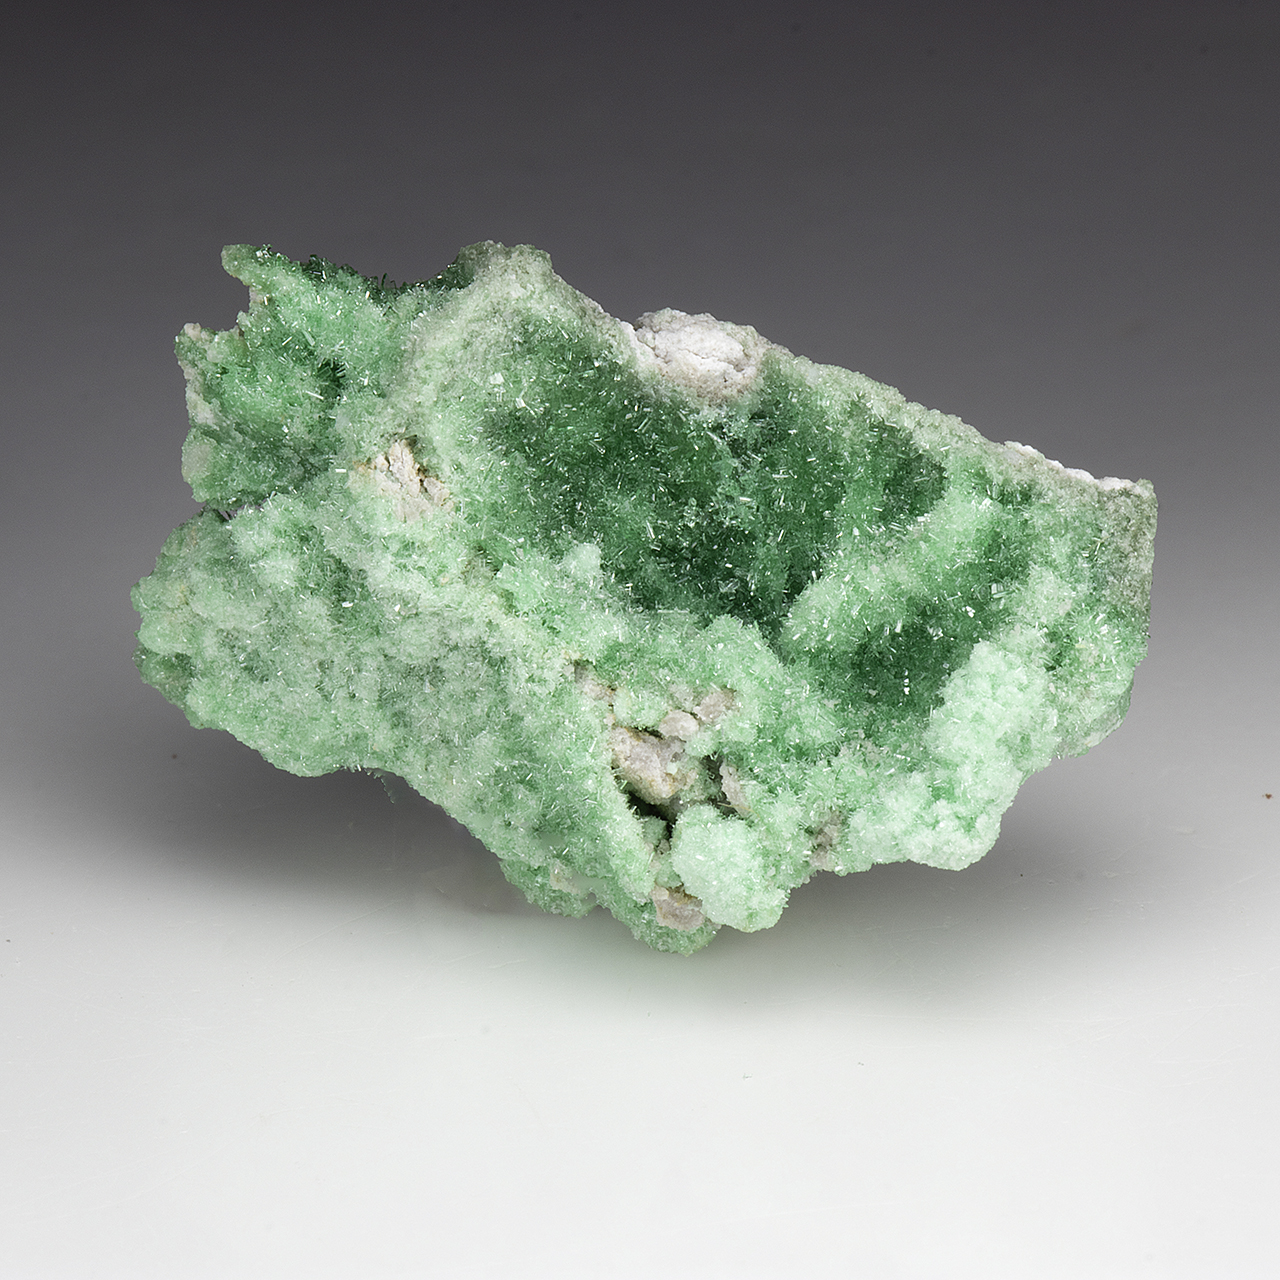 Metavariscite - Minerals For Sale - #3773514